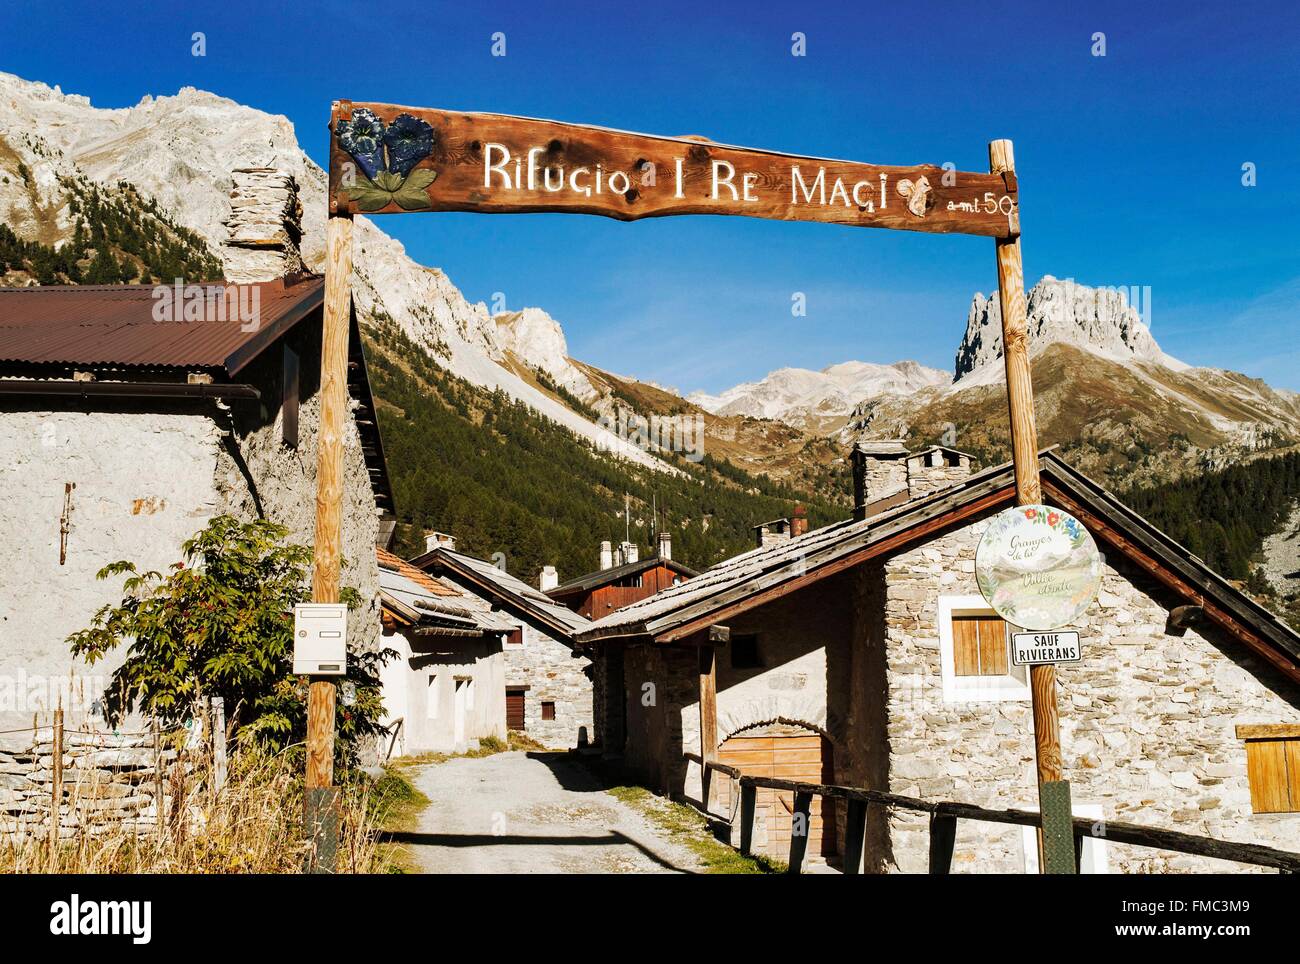 Francia, Hautes Alpes, valle estrecho, Nevache, caserío de Los Granges, refugio me Re Magos Foto de stock